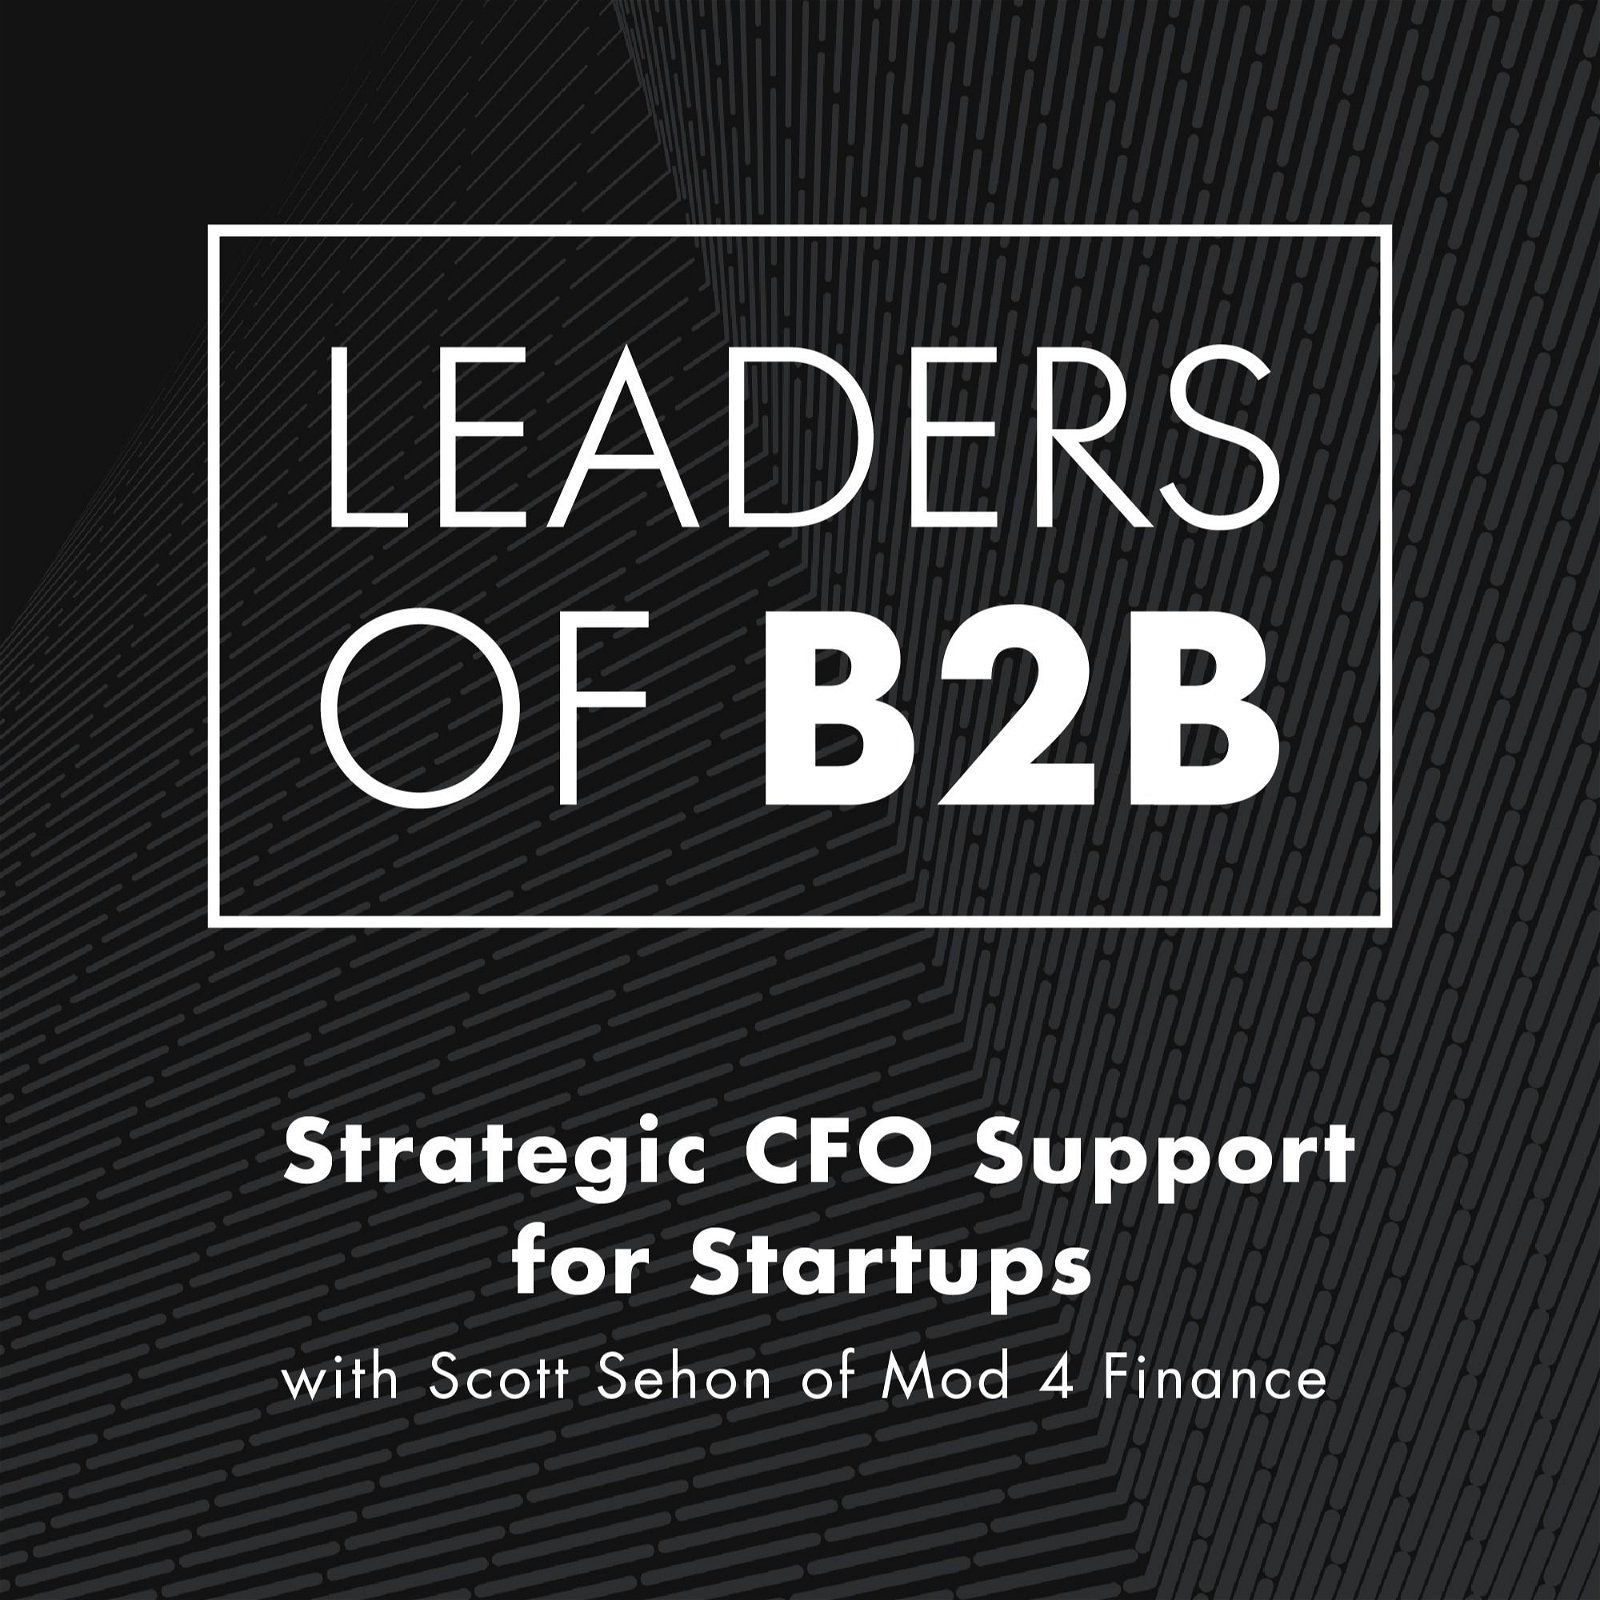 Strategic CFO Support for Startups with Scott Sehon of Mod 4 Finance